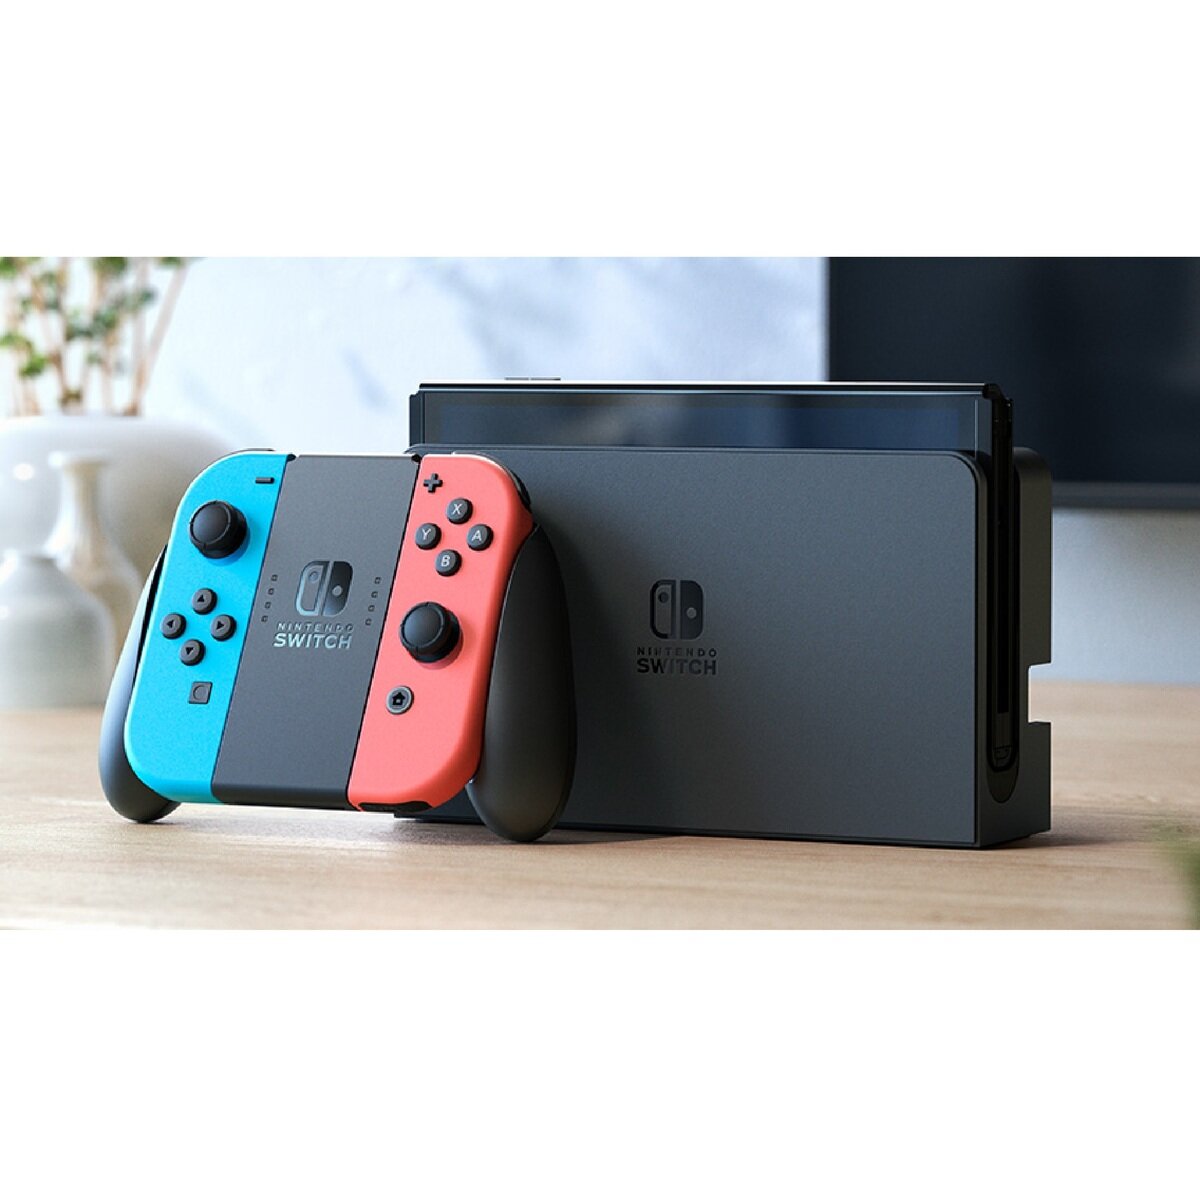 Nintendo Switch (有機ELモデル) ネオンブルー・ネオンレッド | Costco ...